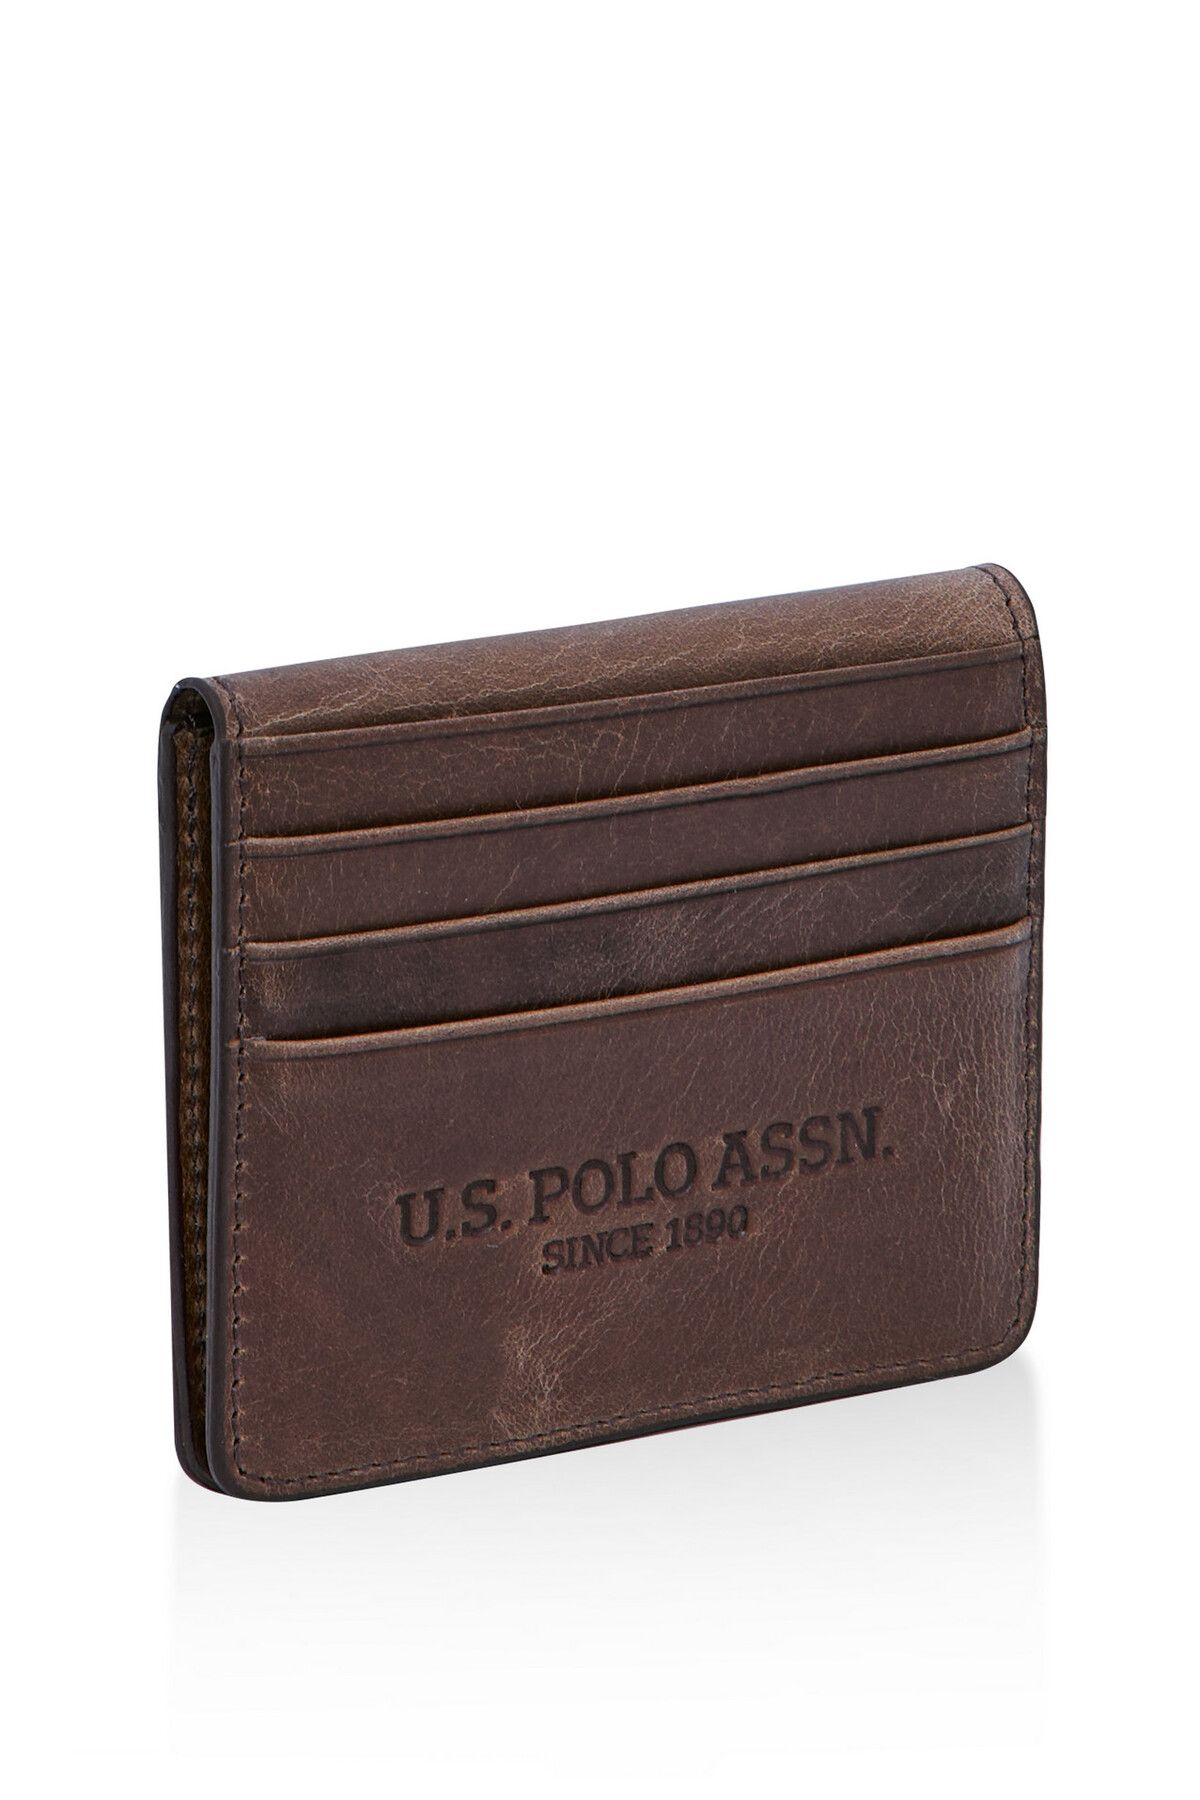 U.S. Polo Assn. US Polo Assn 23831 Unisex Hakiki Deri kartlık/cüzdan KAHVERENGİ